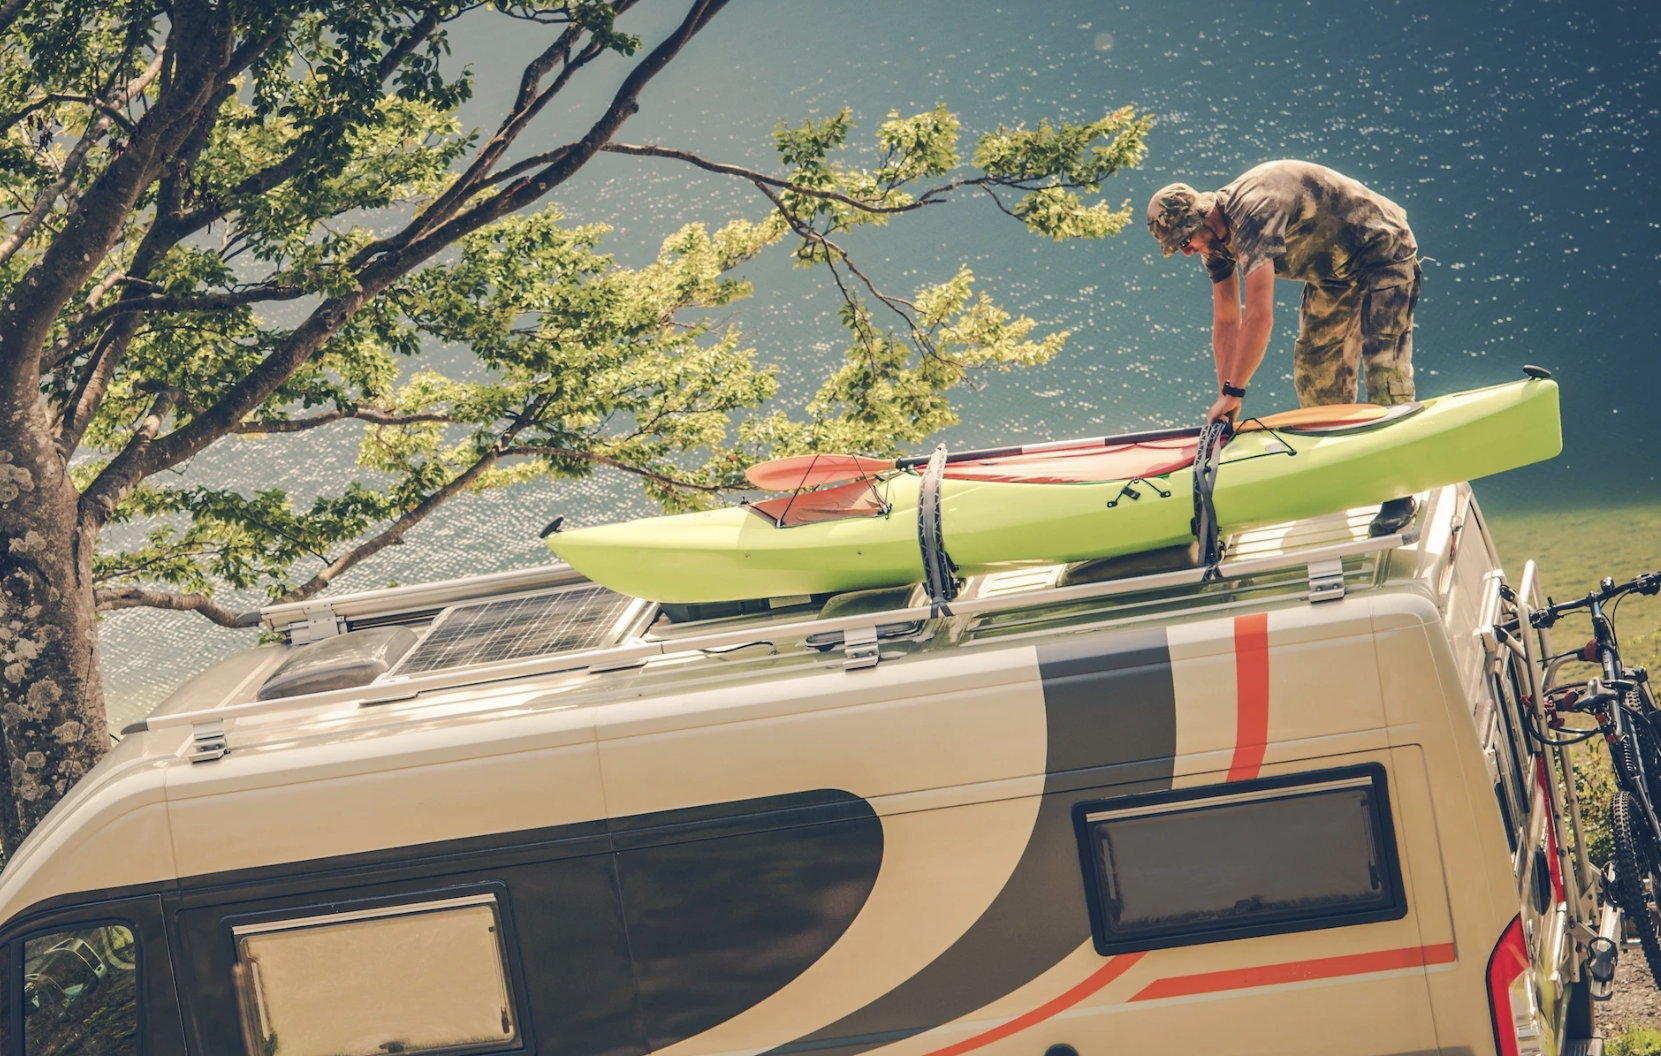 GO Kayaking Trailer & Camper Options